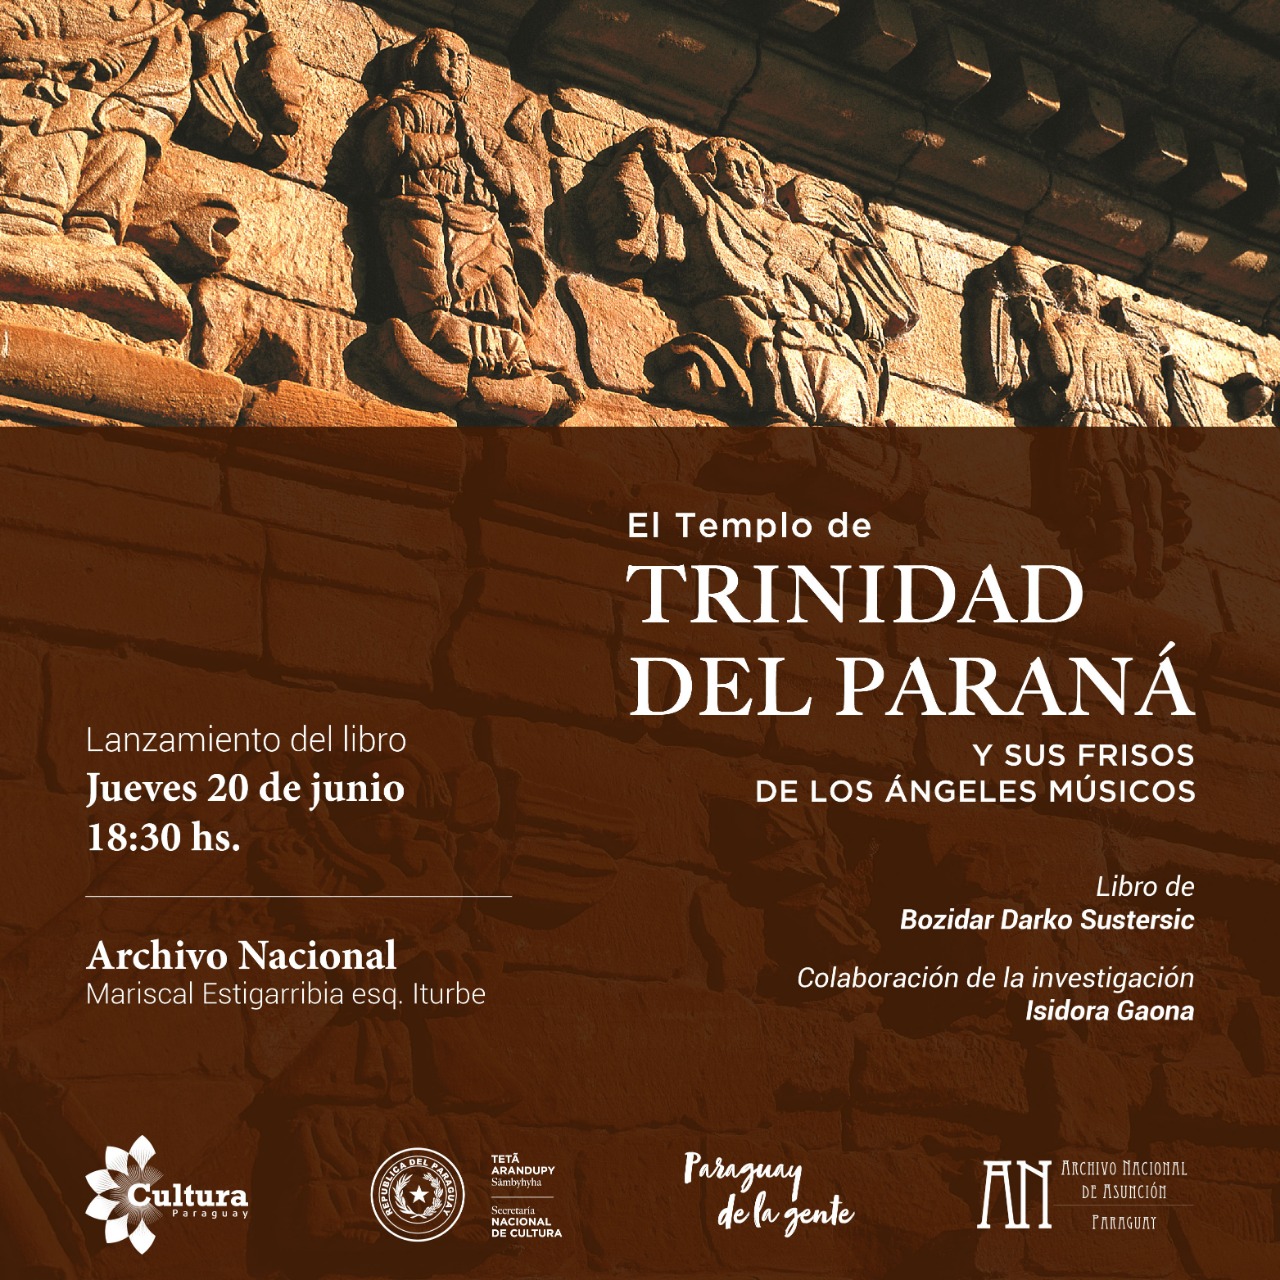 La SNC presenta hoy el libro “El Templo de Trinidad del Paraná y sus Frisos de los Ángeles Músicos”, en el Archivo Nacional imagen